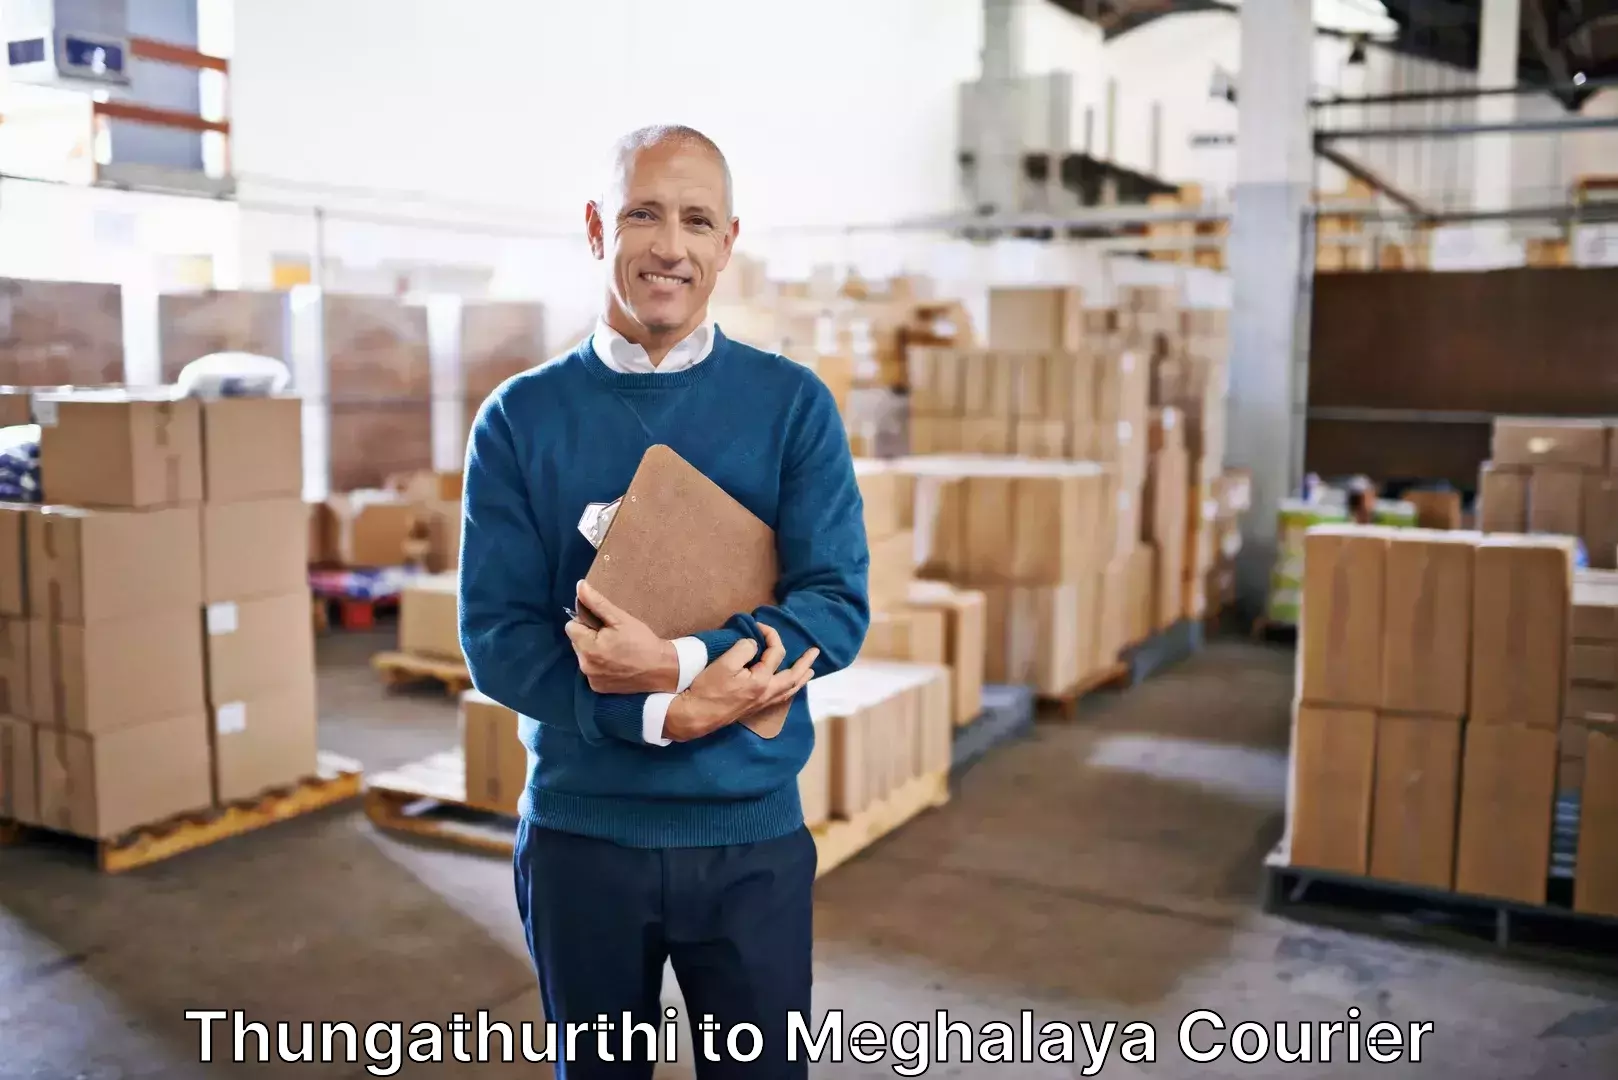 Luggage delivery system Thungathurthi to Meghalaya